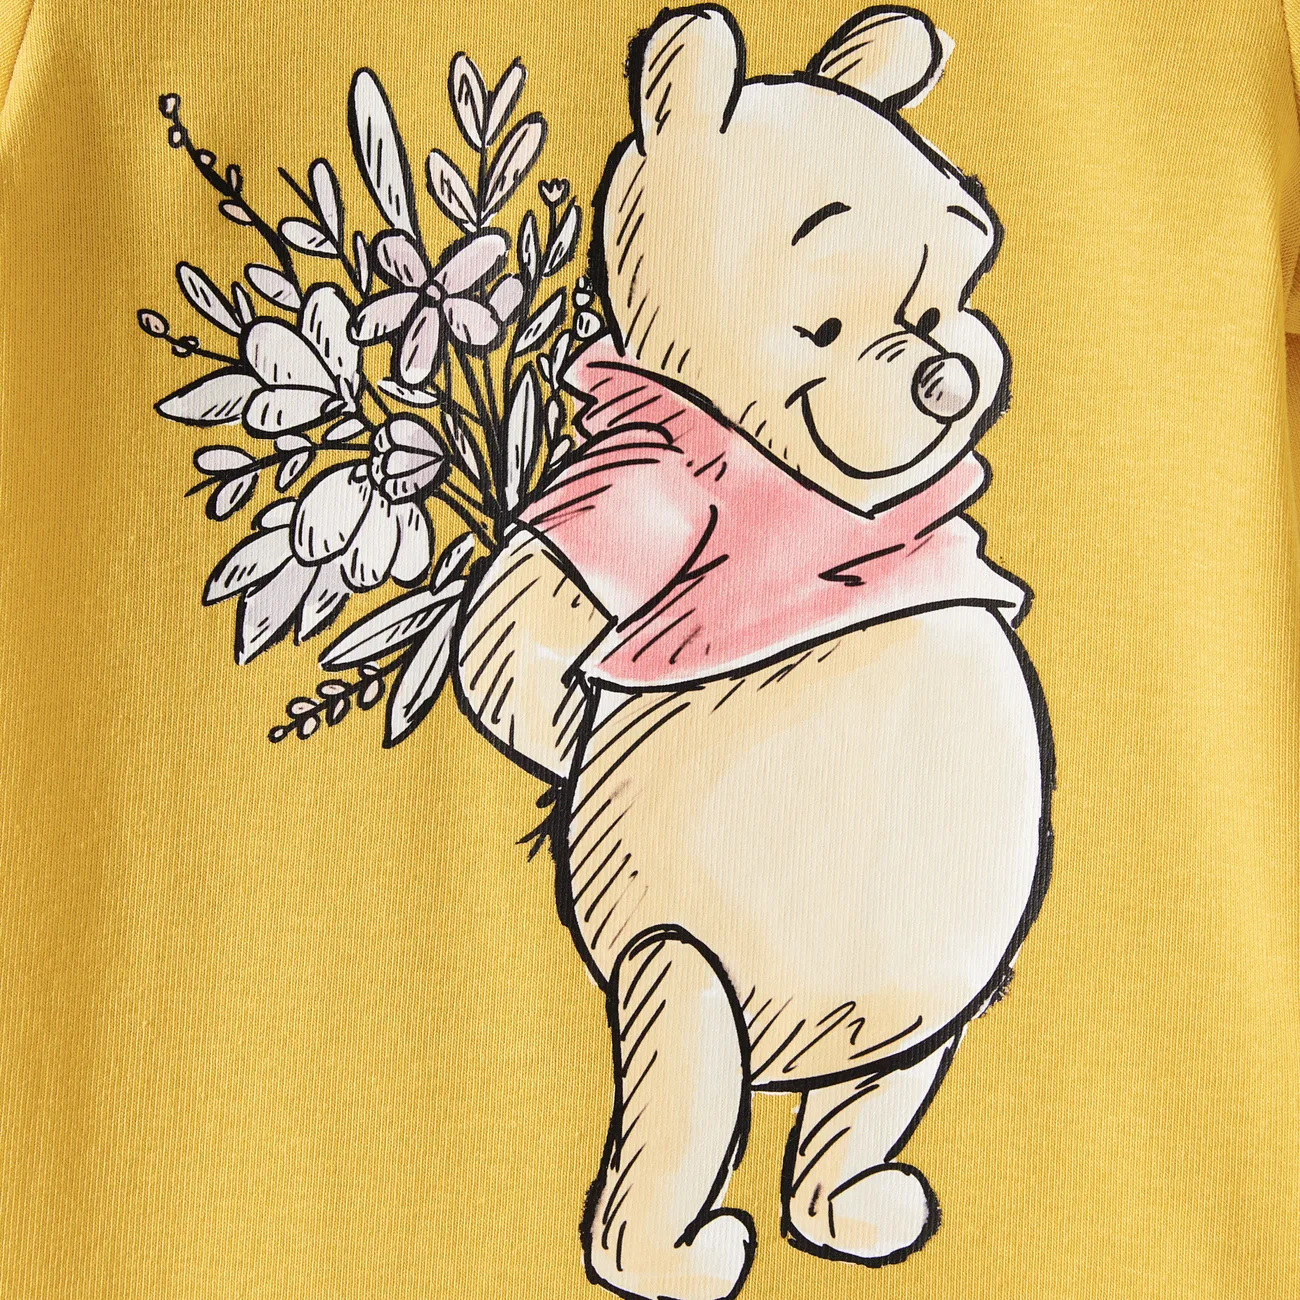 Disney Winnie the Pooh Dia da Mãe Manga curta Vestidos Mãe e eu Multicolorido big image 1